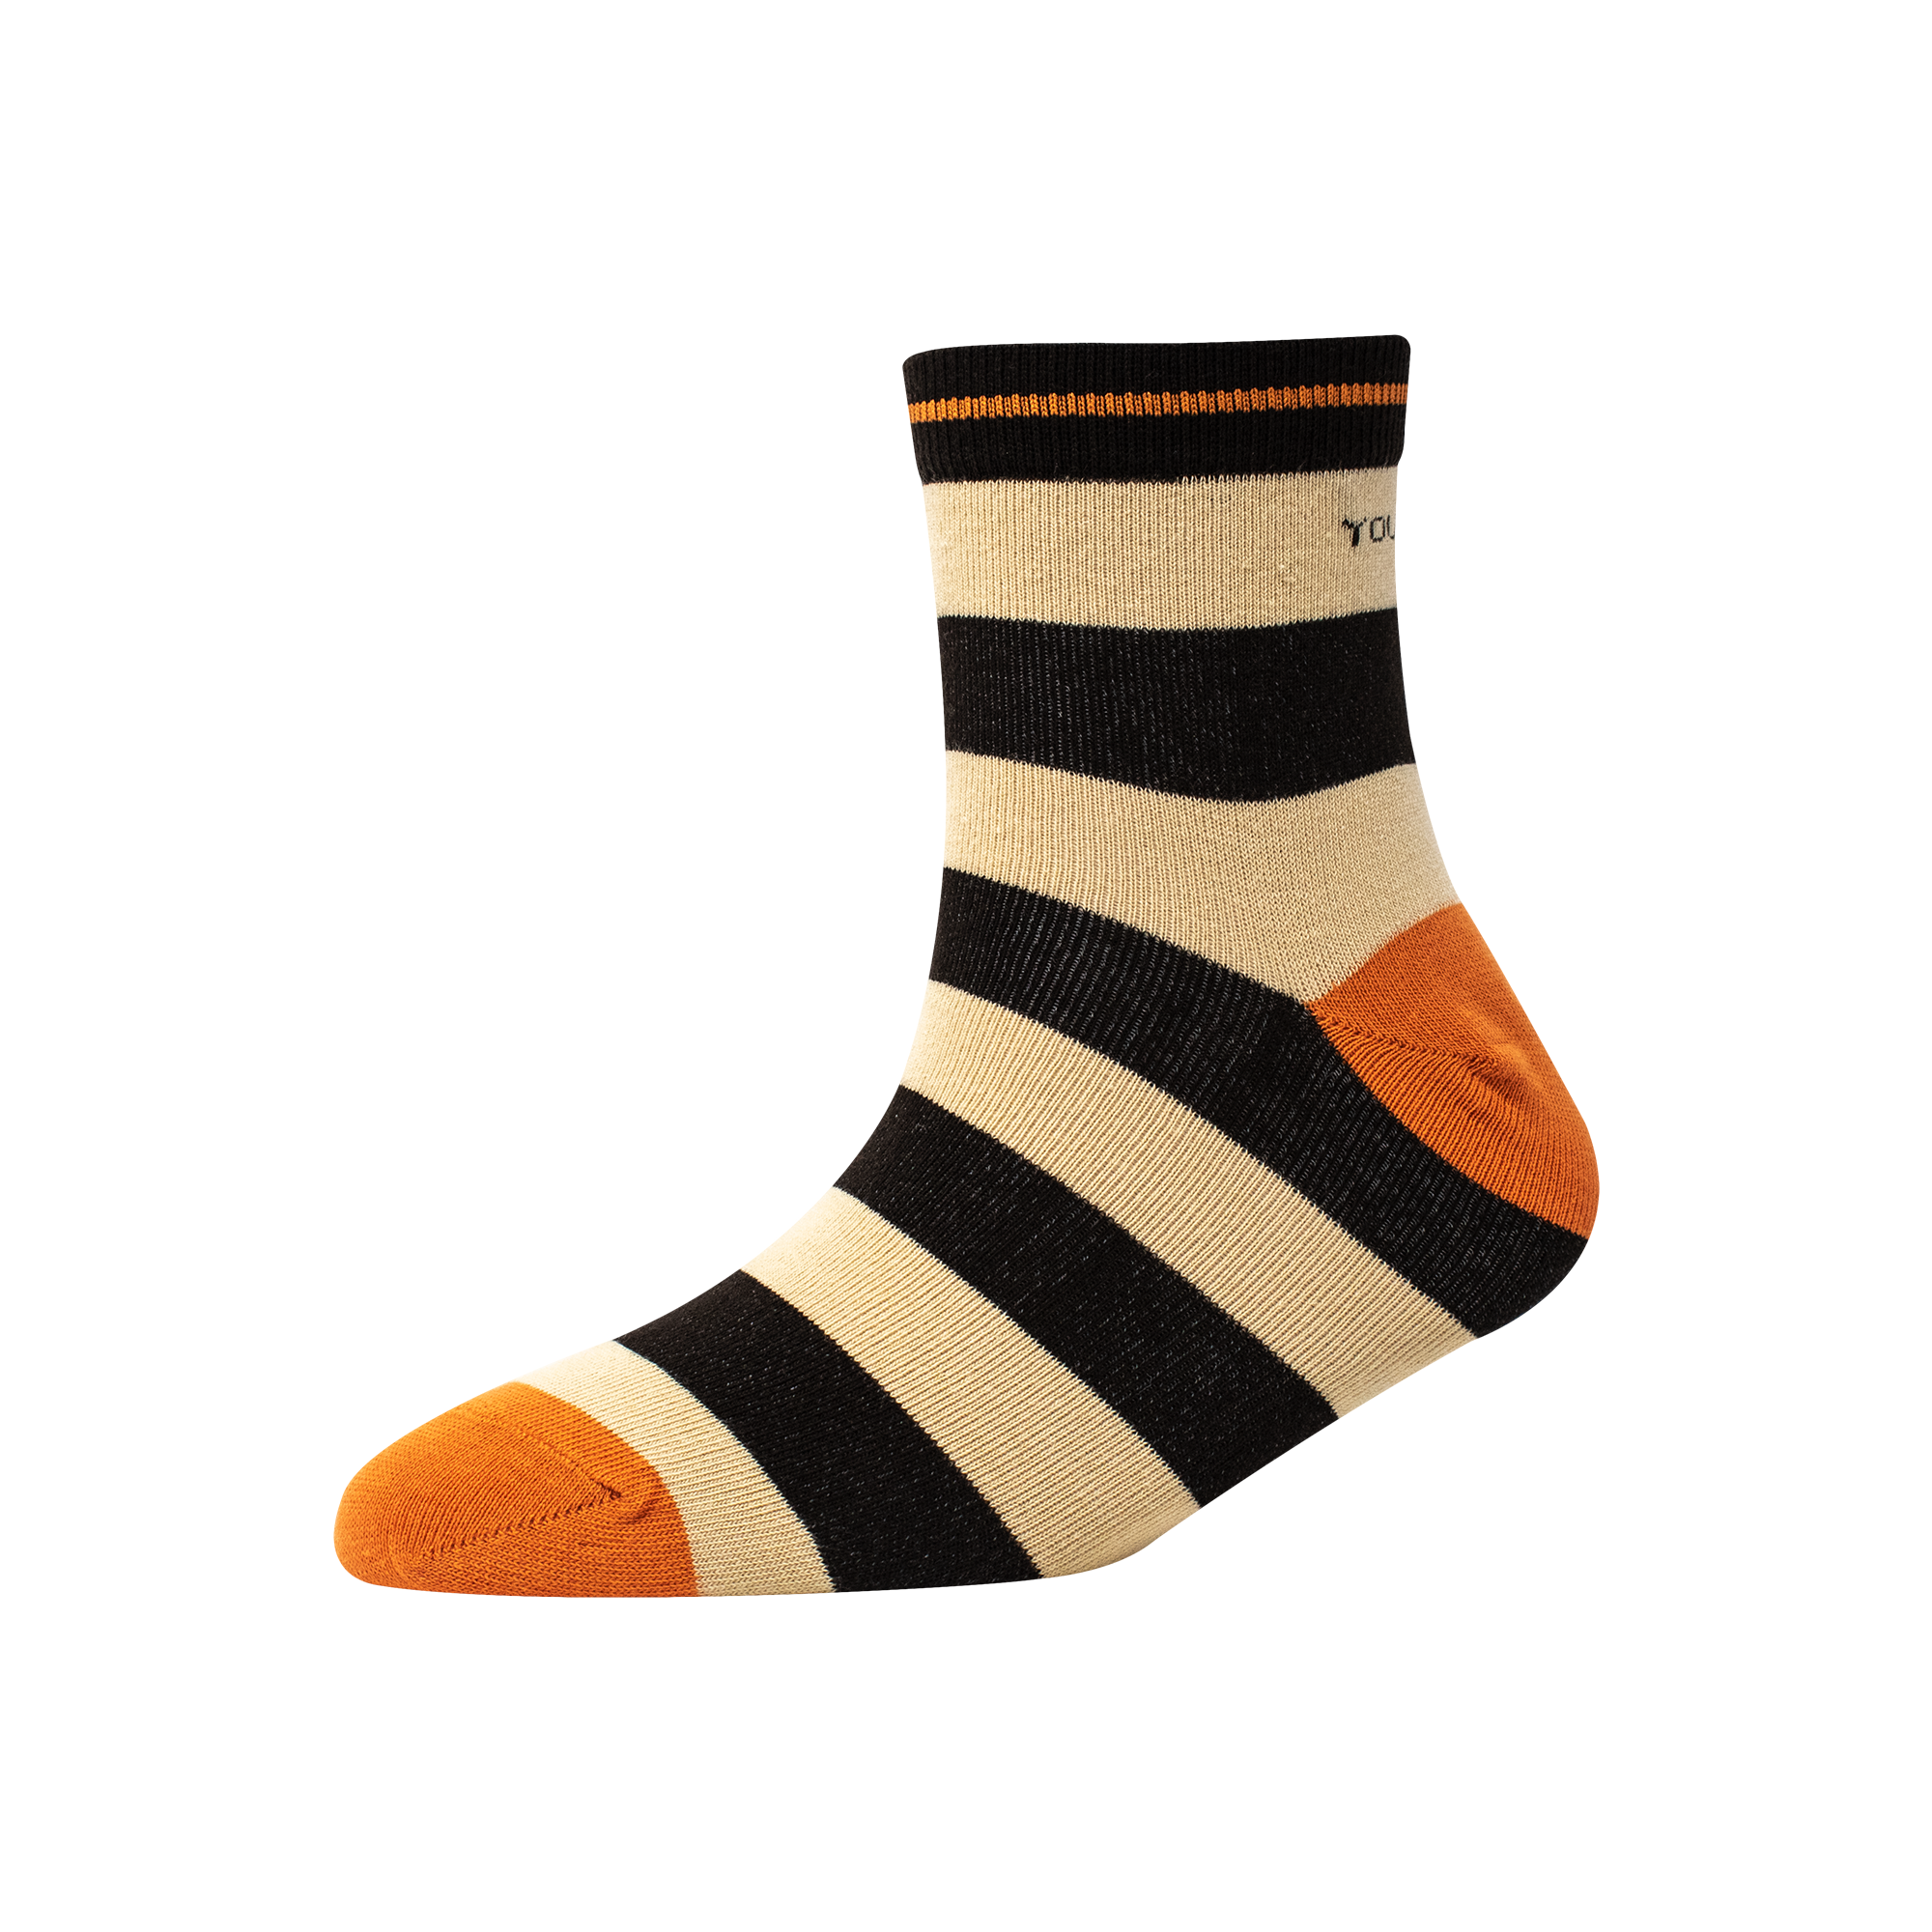 Men's AL026 Pack of 3 Ankle Socks